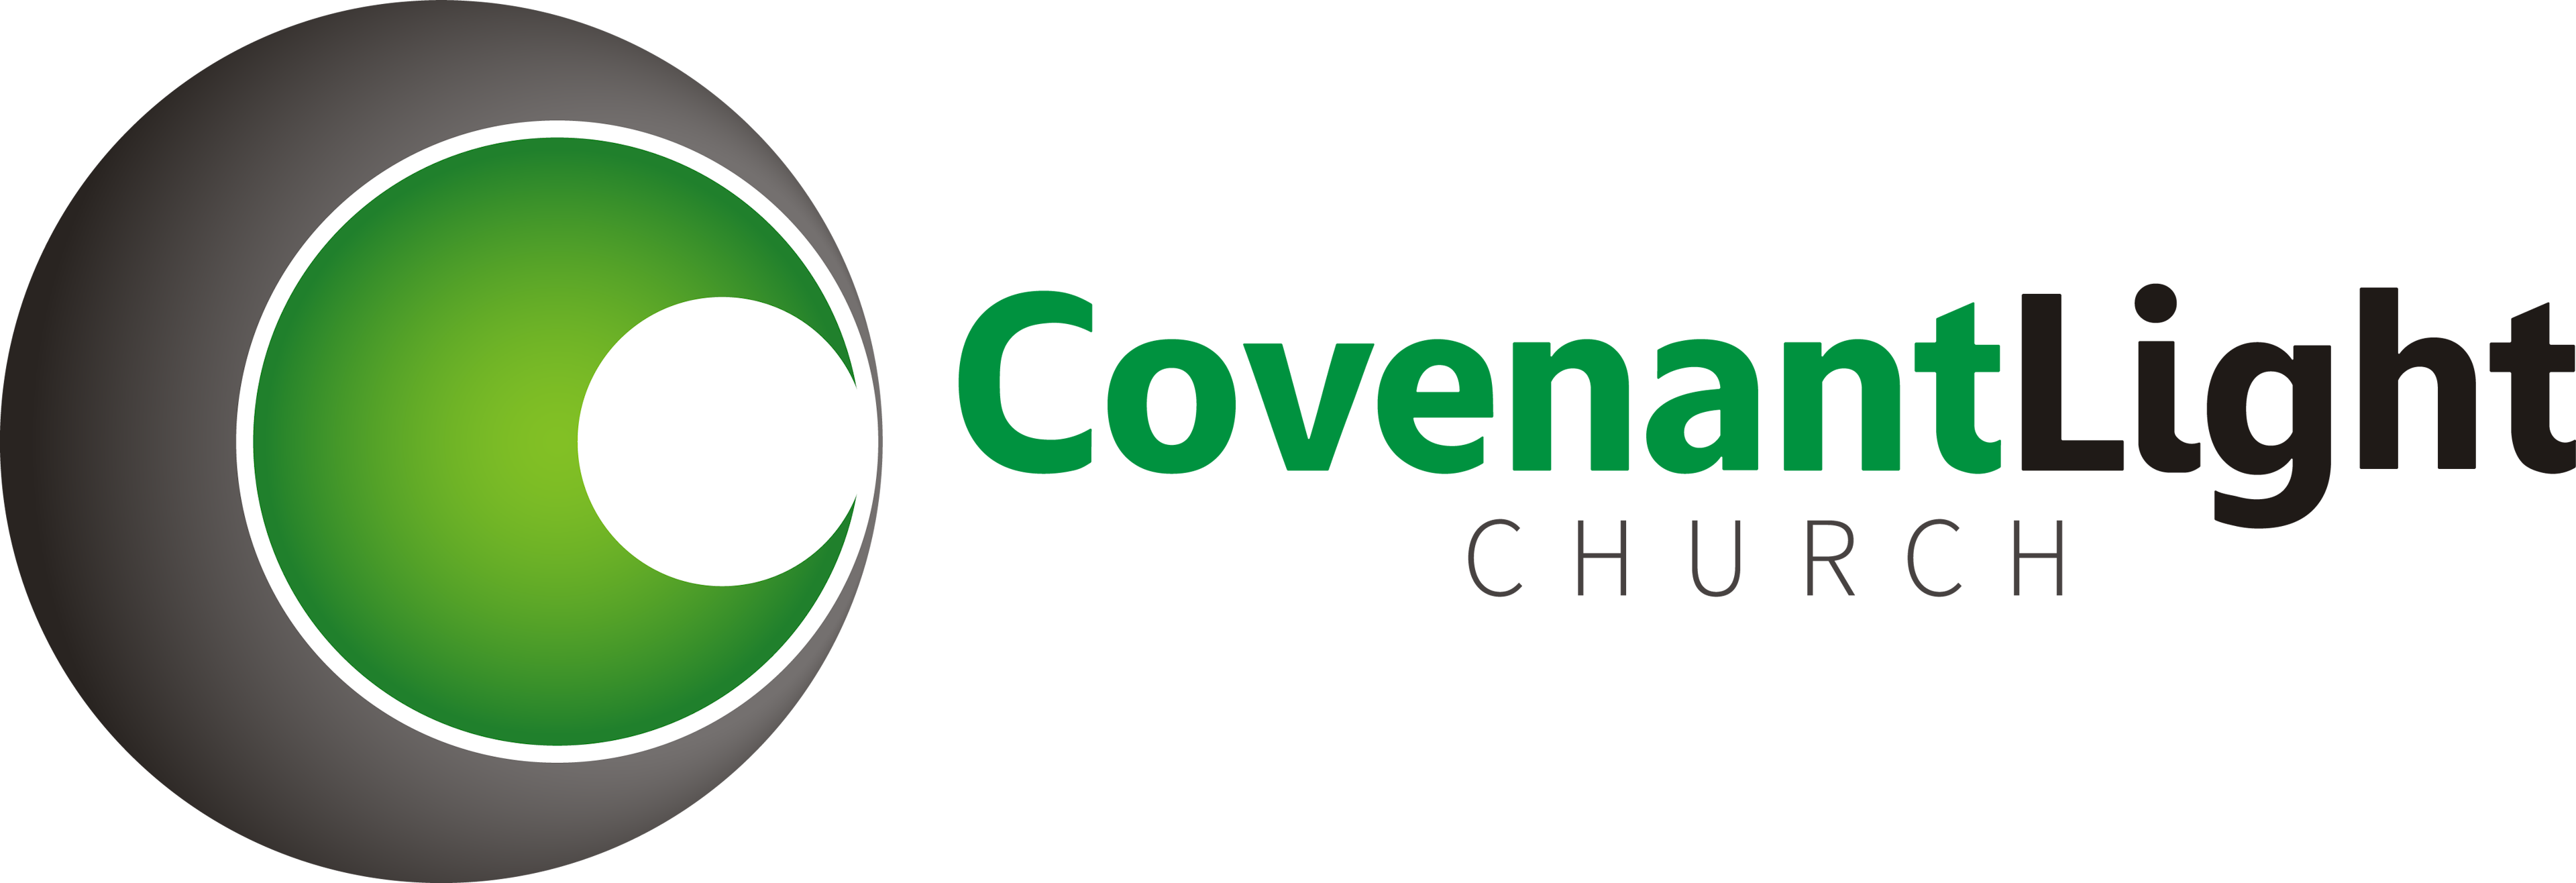 CovenantLight Logo